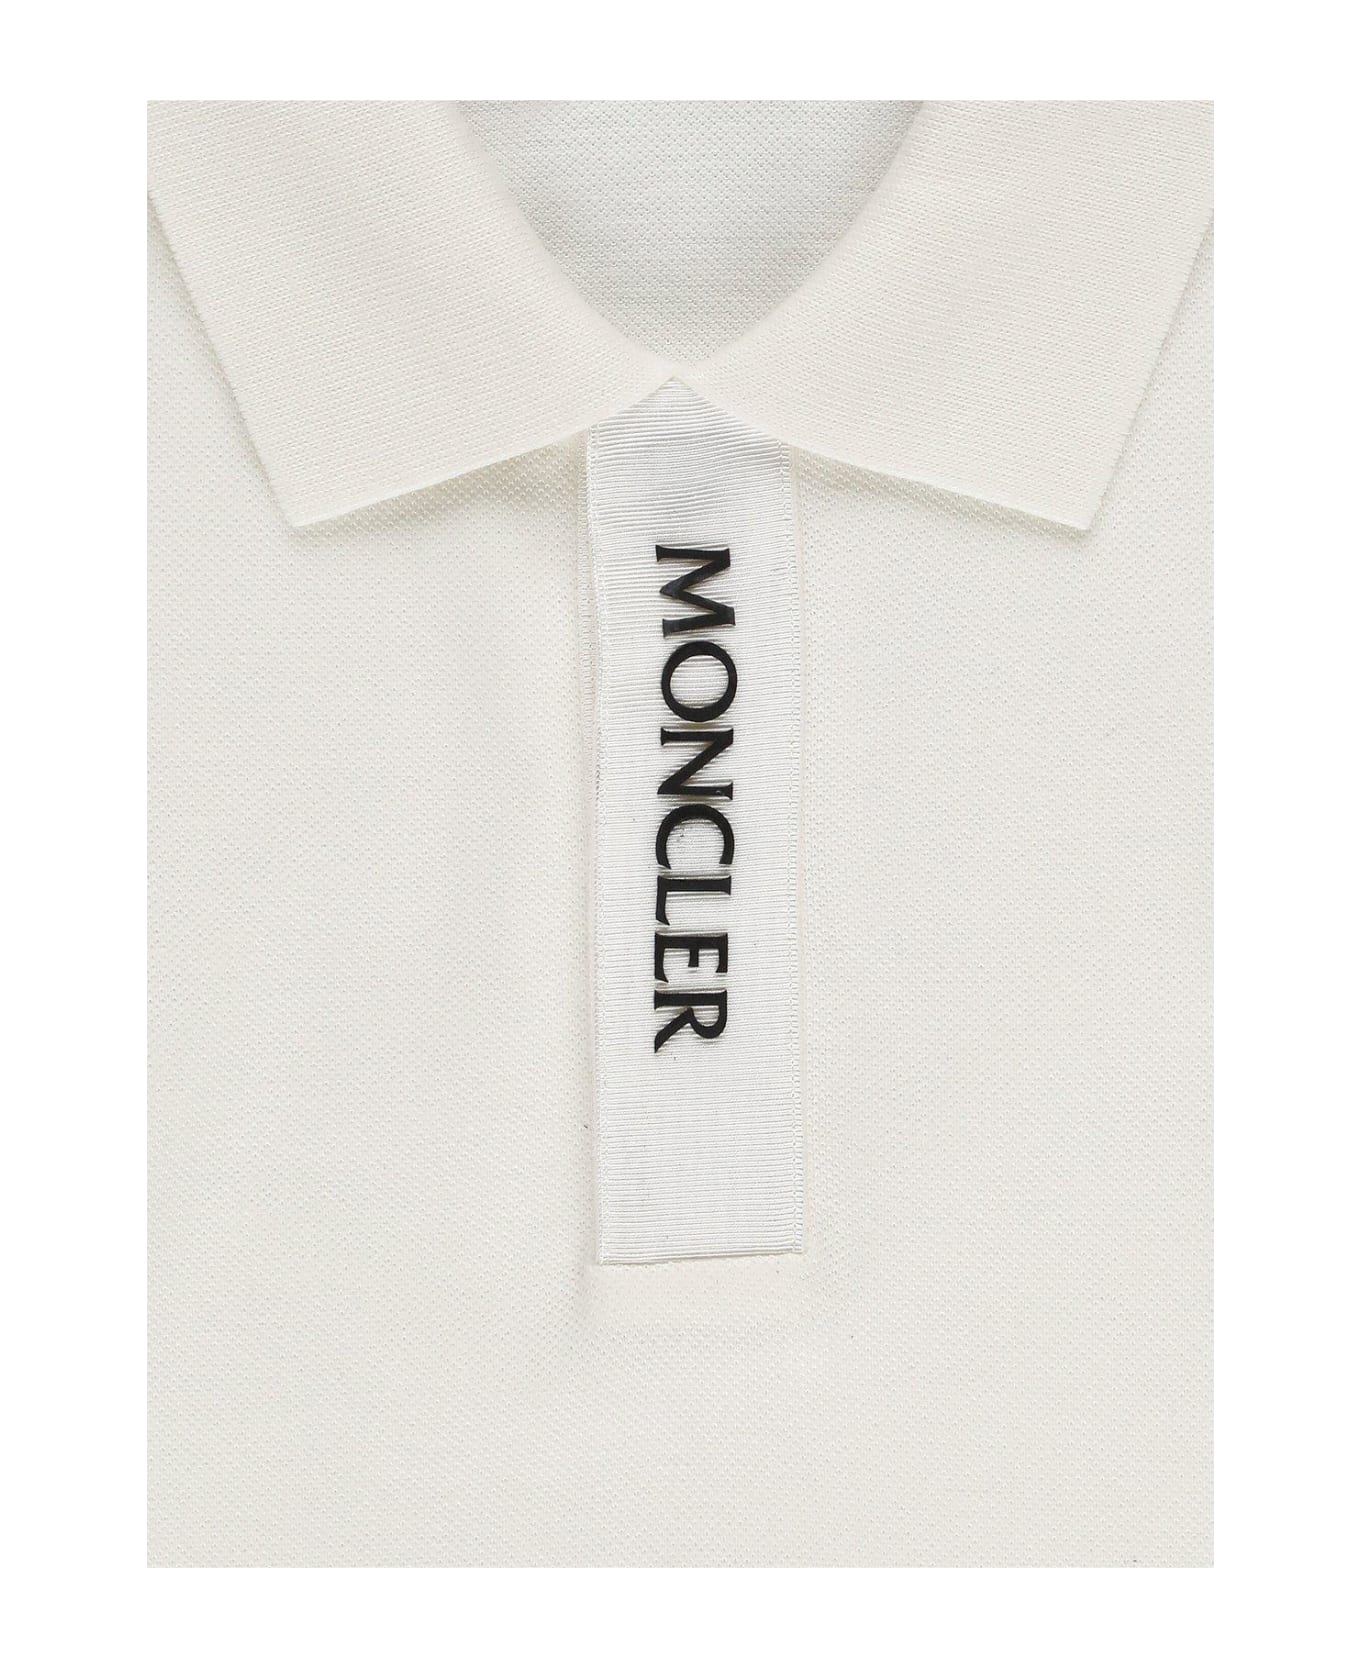 Moncler Logo Detailed Short Sleeved Polo Shirt - White シャツ